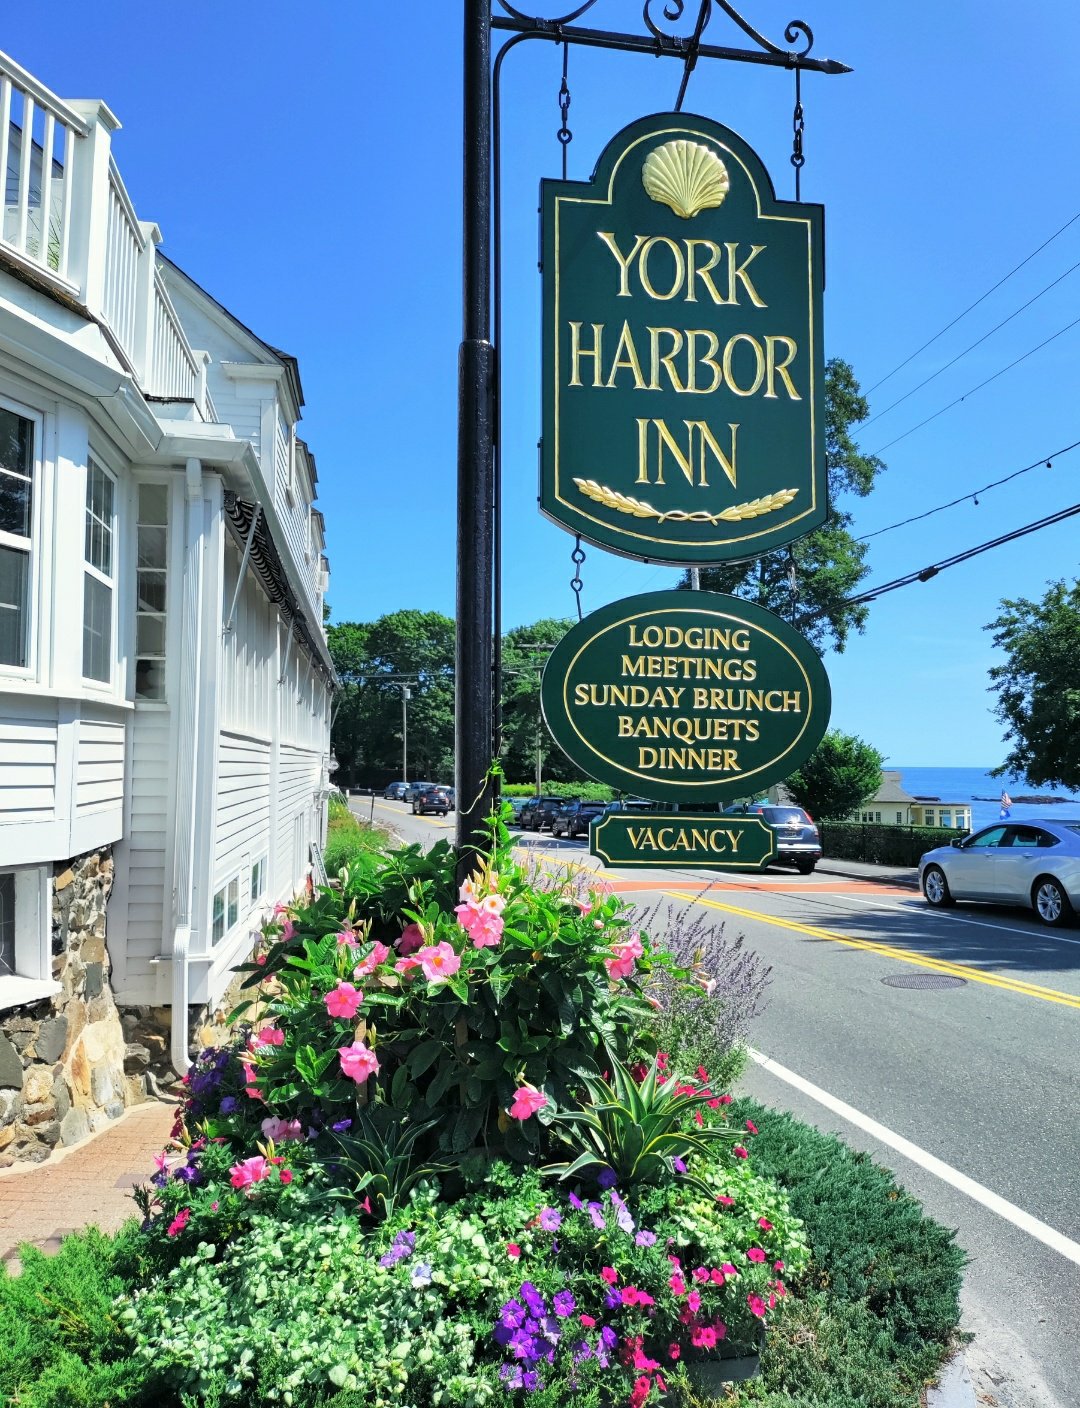 York Harbor Inn in York, Maine